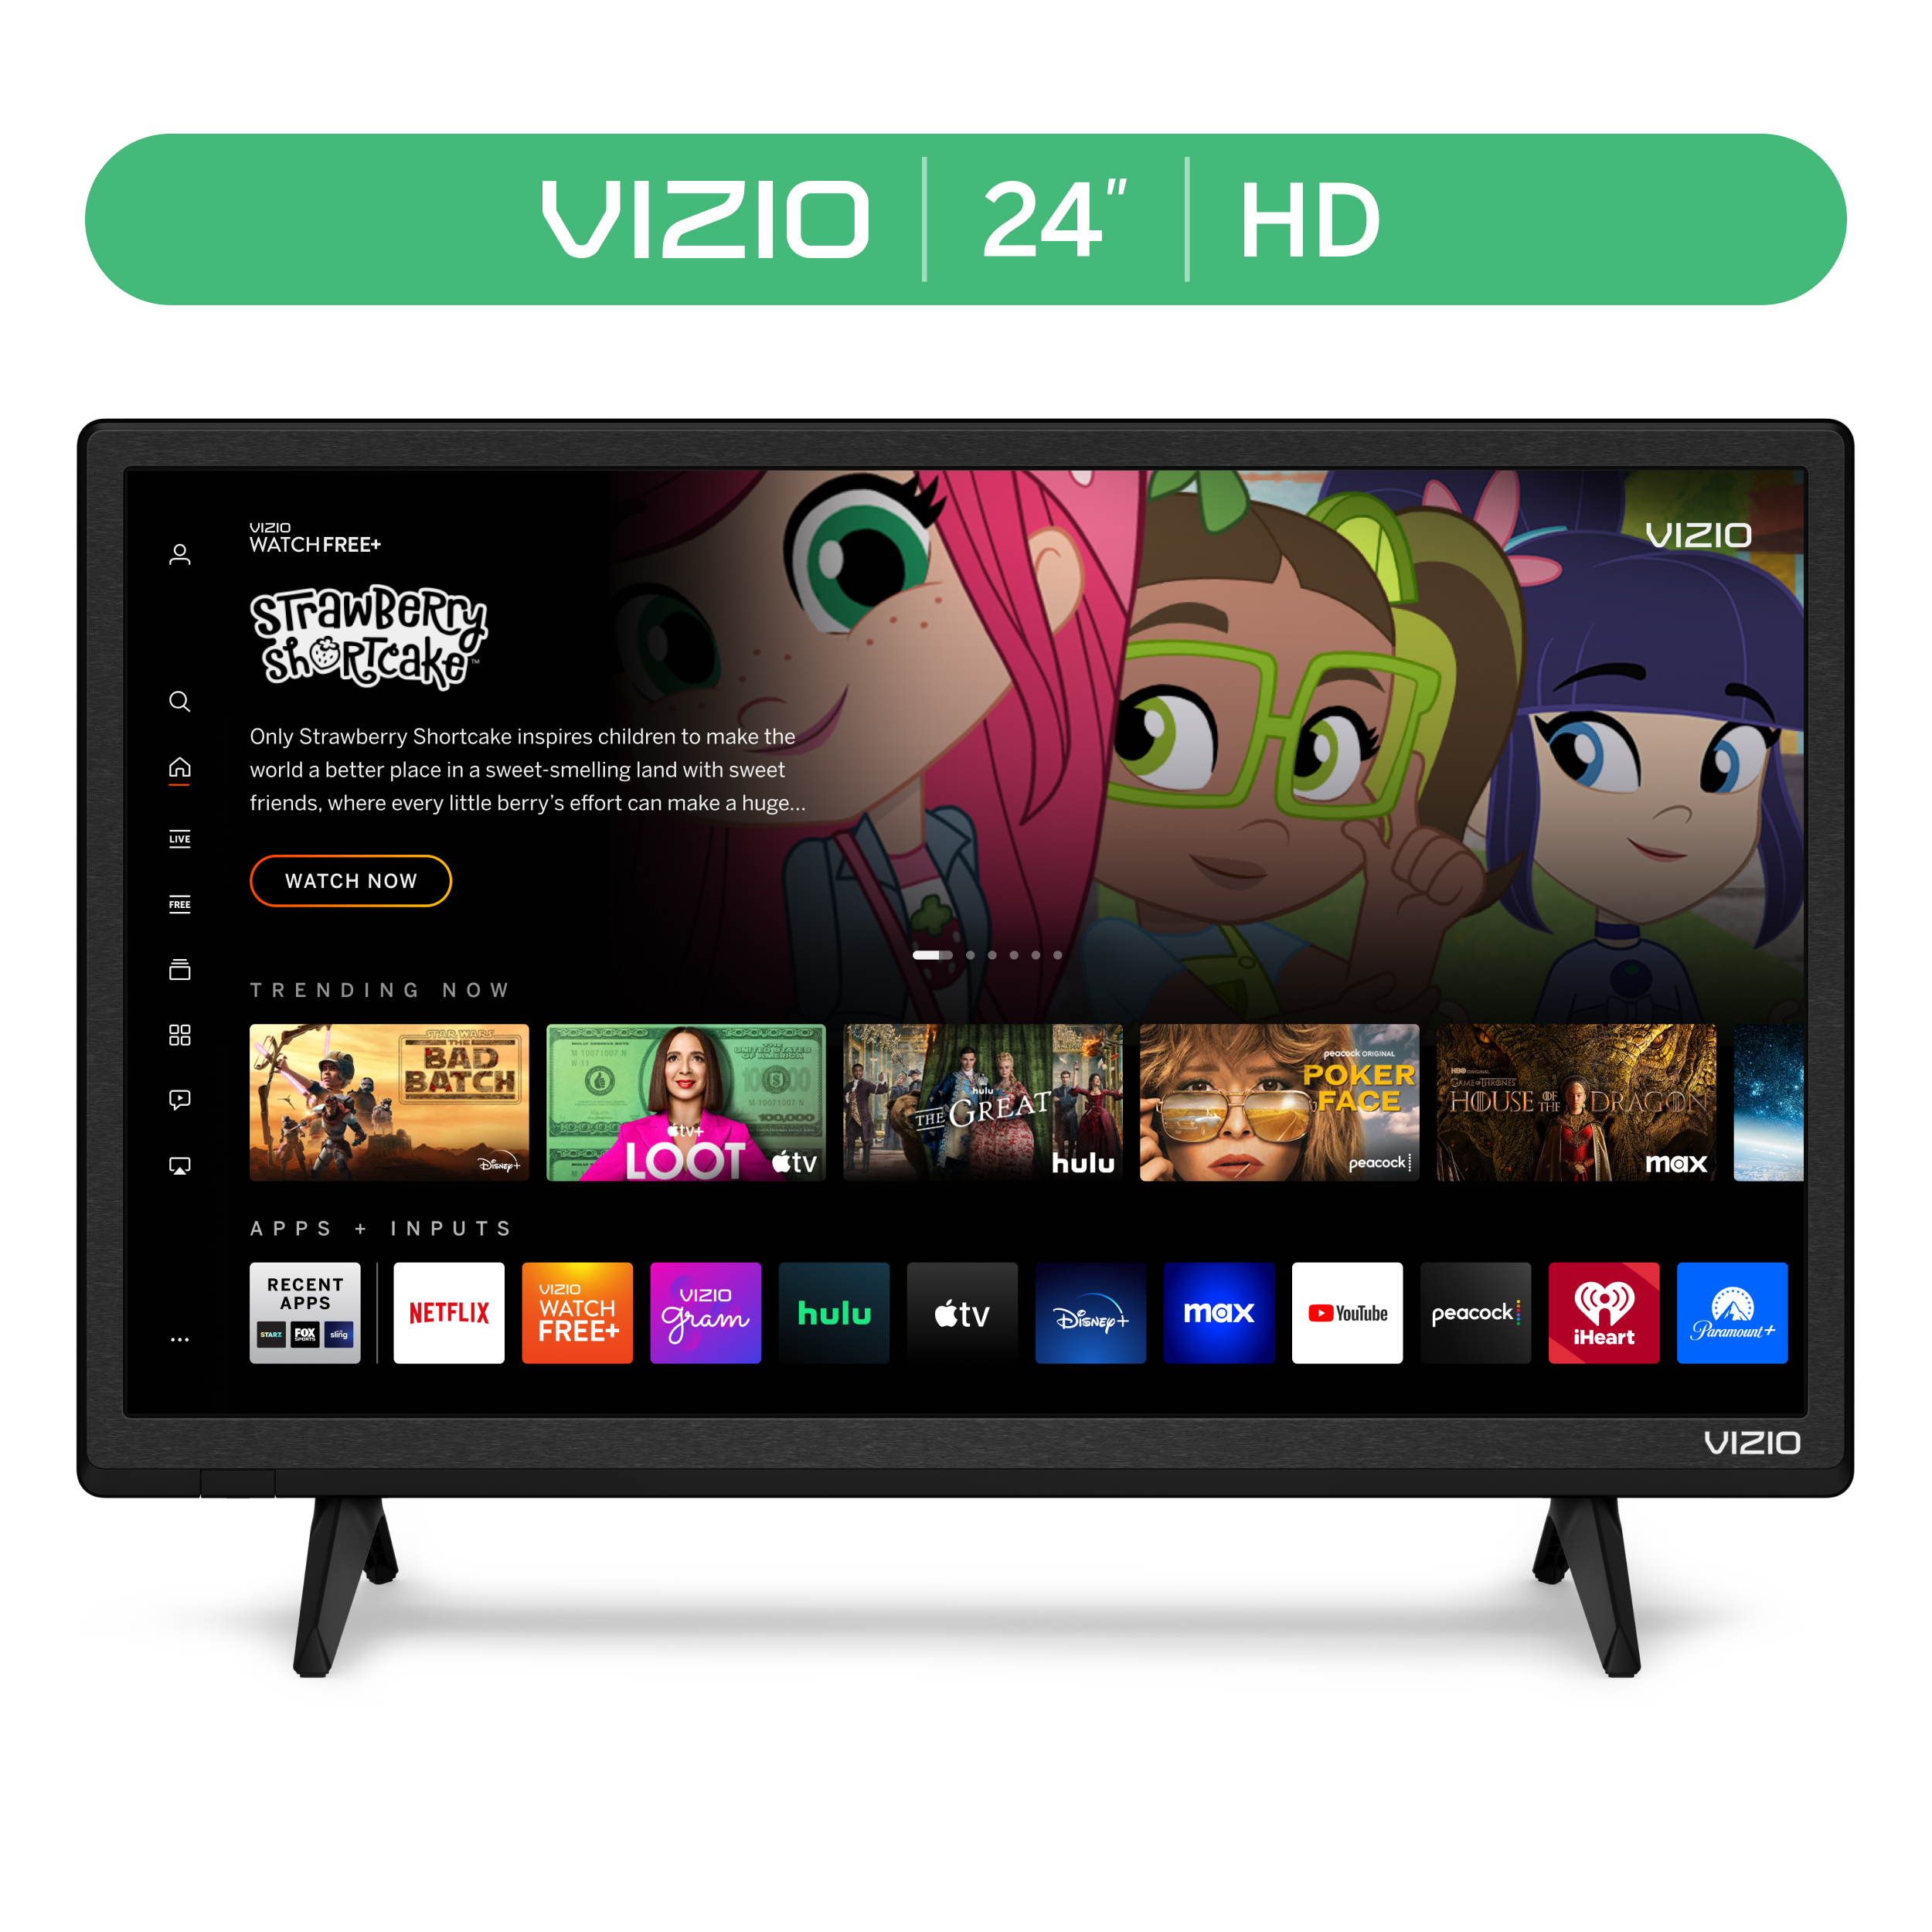 VIZIO 24" Class D-Series HD LED Smart TV D24h-J09 - image 1 of 18